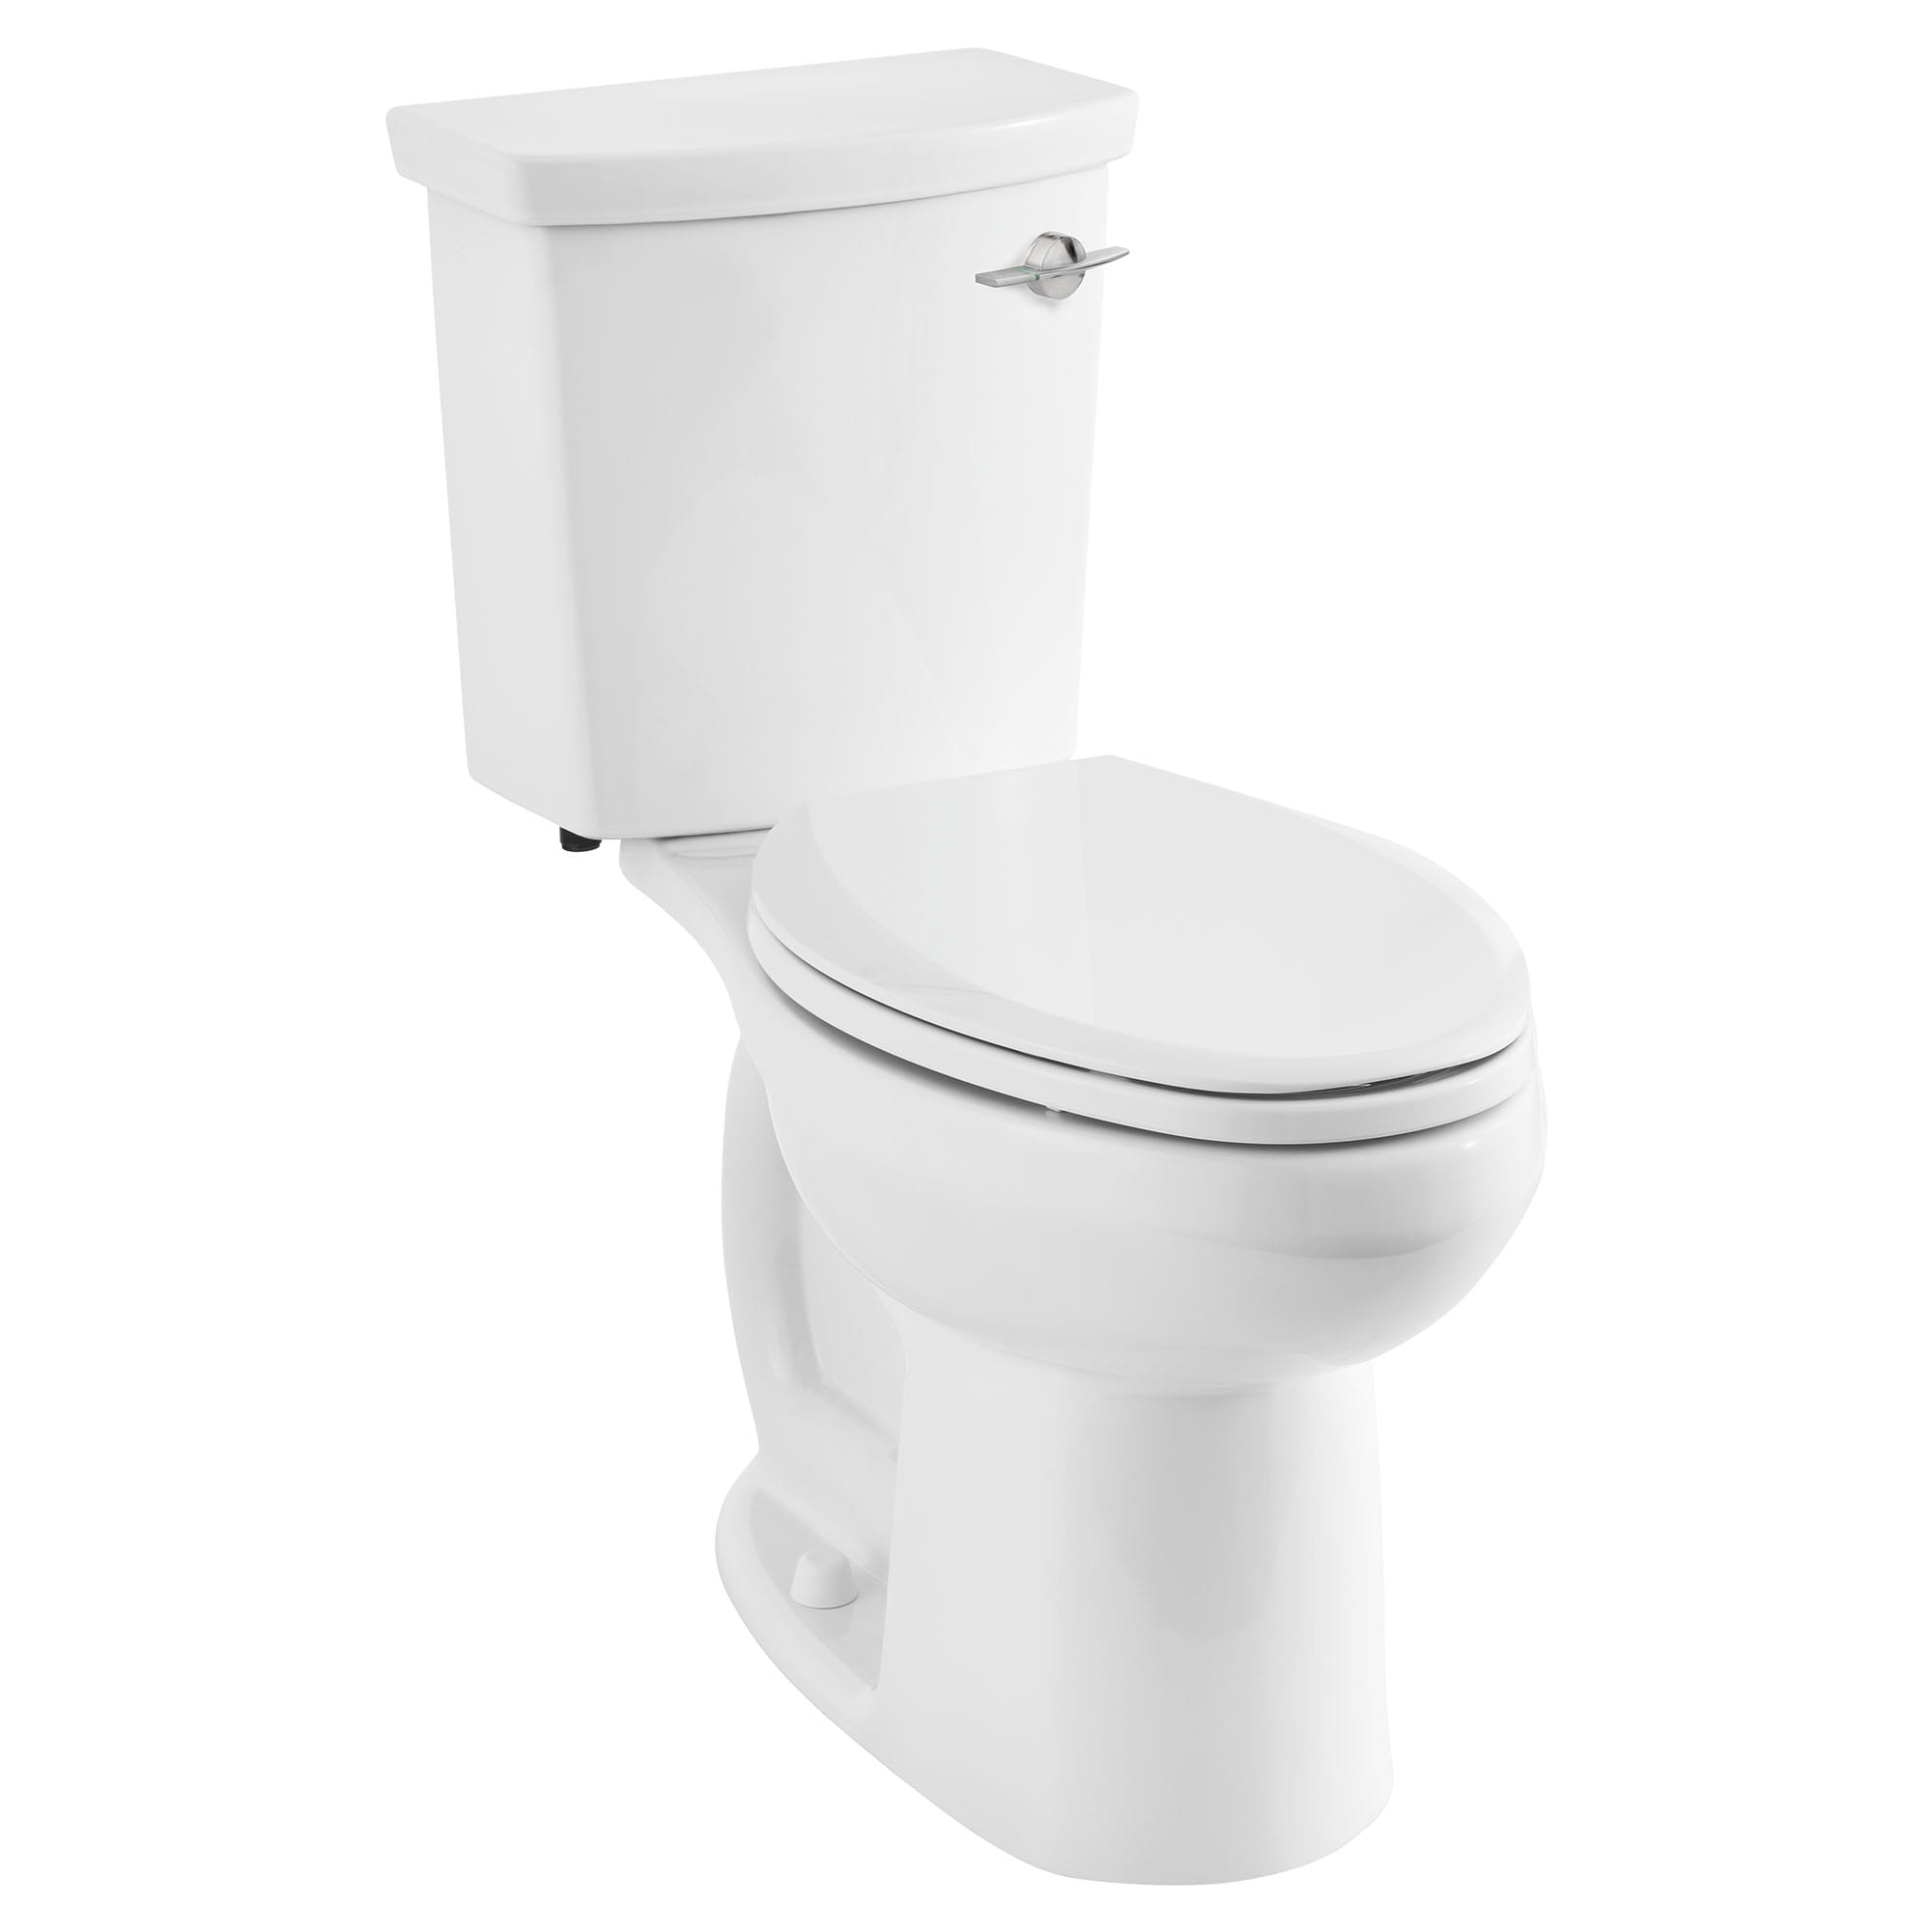 Toilette H2Option ADA, 2 pièces, chasse double 1,28 gpc/4,8 lpc et 0,92 gpc/3,5 lpc, à cuvette allongée à hauteur de chaise, levier de déclenchement à droite, sans siège